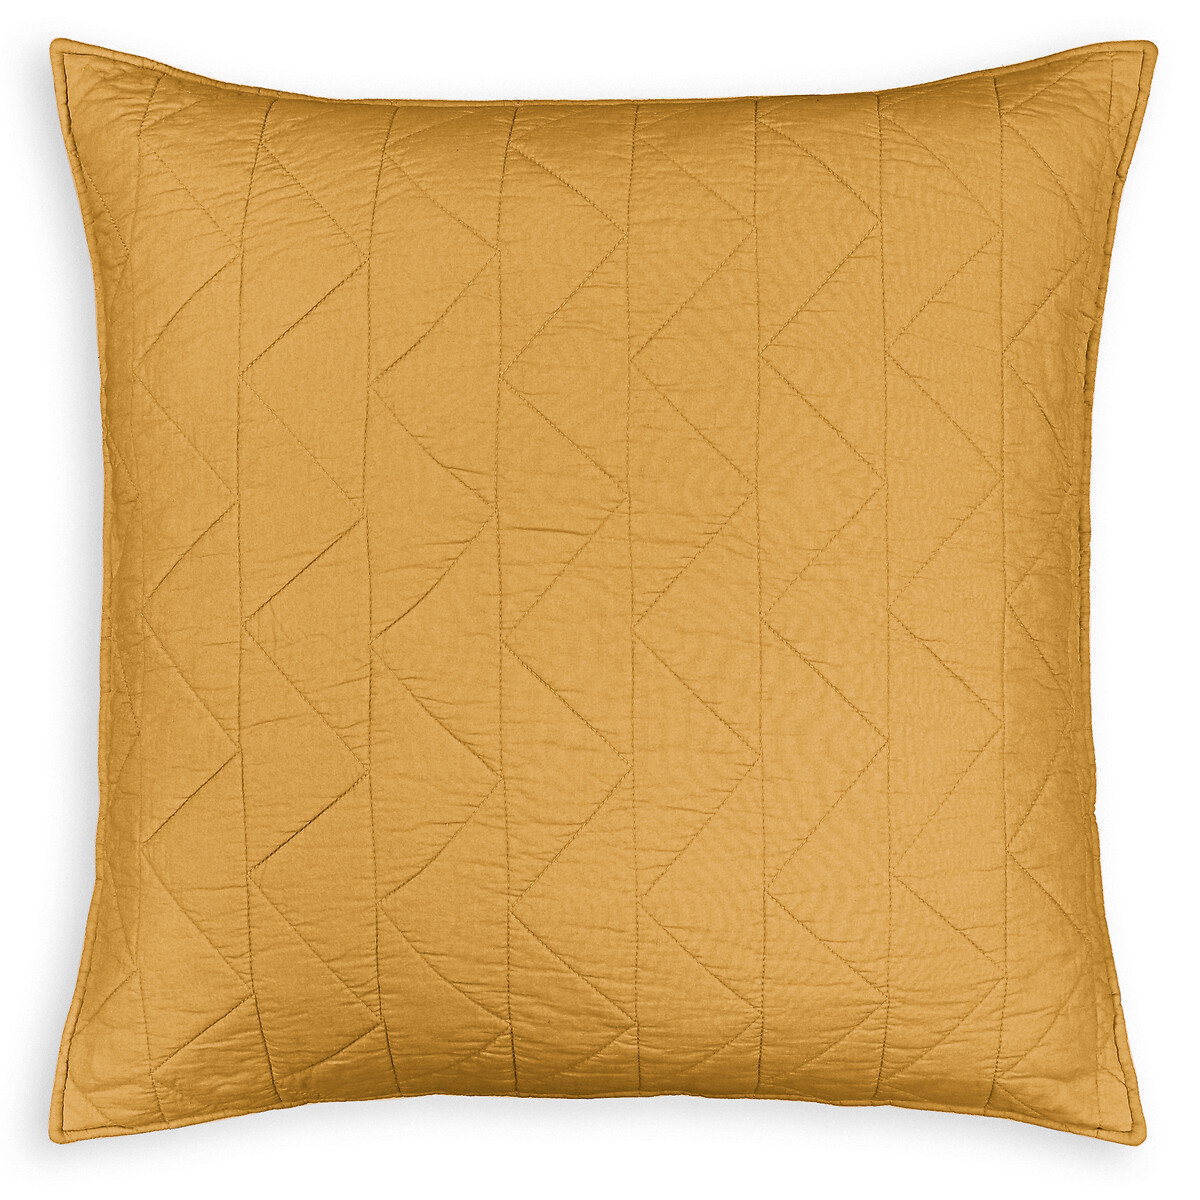 Чехол La Redoute На подушку  наволочка Zig-zag 65 x 65 см желтый, размер 65 x 65 см - фото 2